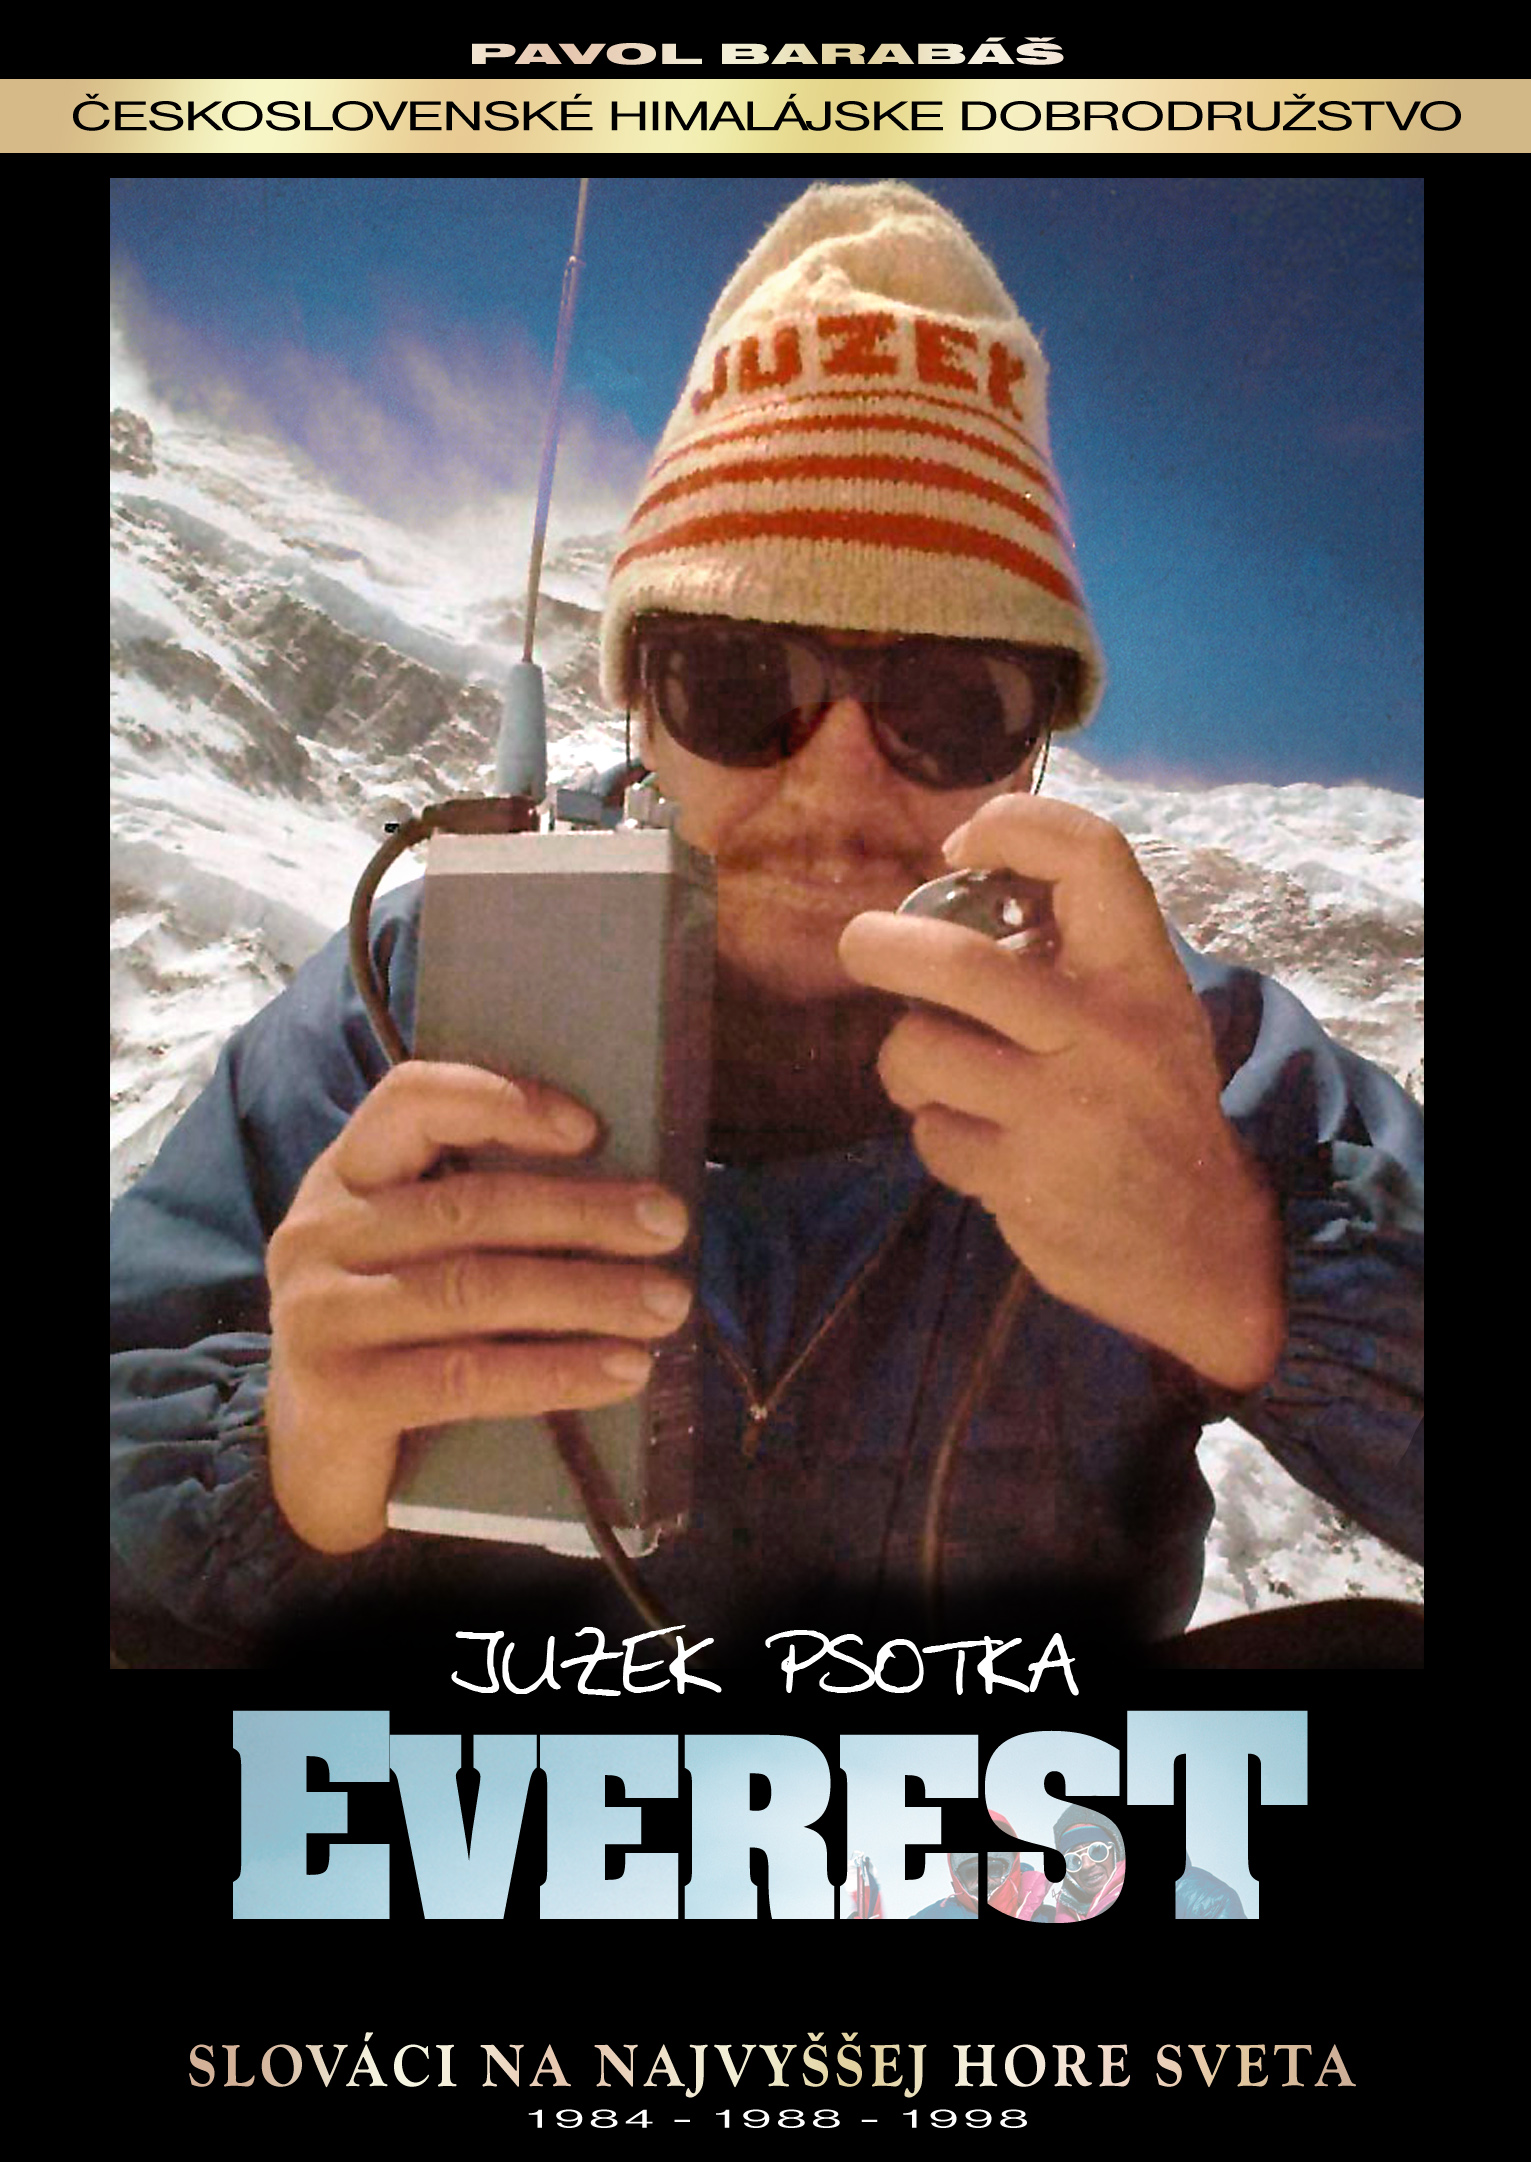 Everest - Juzek Psotka